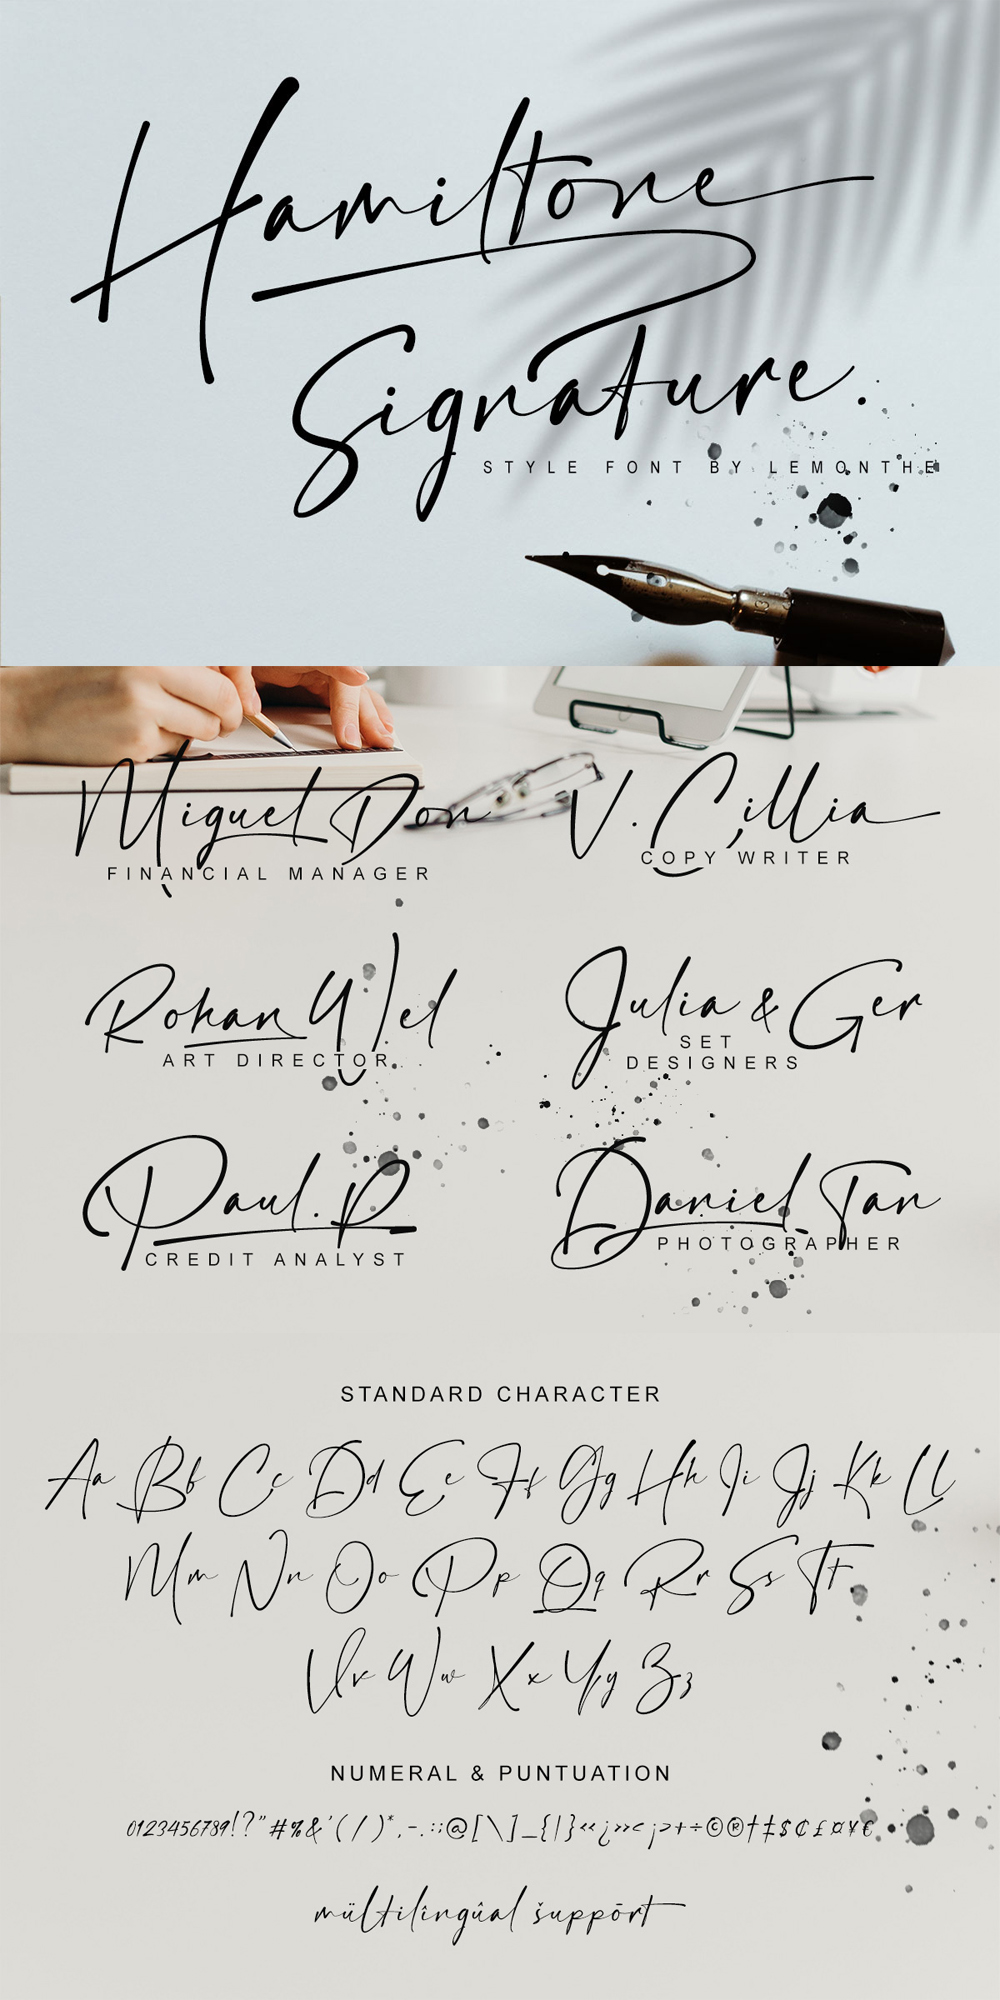 Hamiltone - Luxury Signature Font